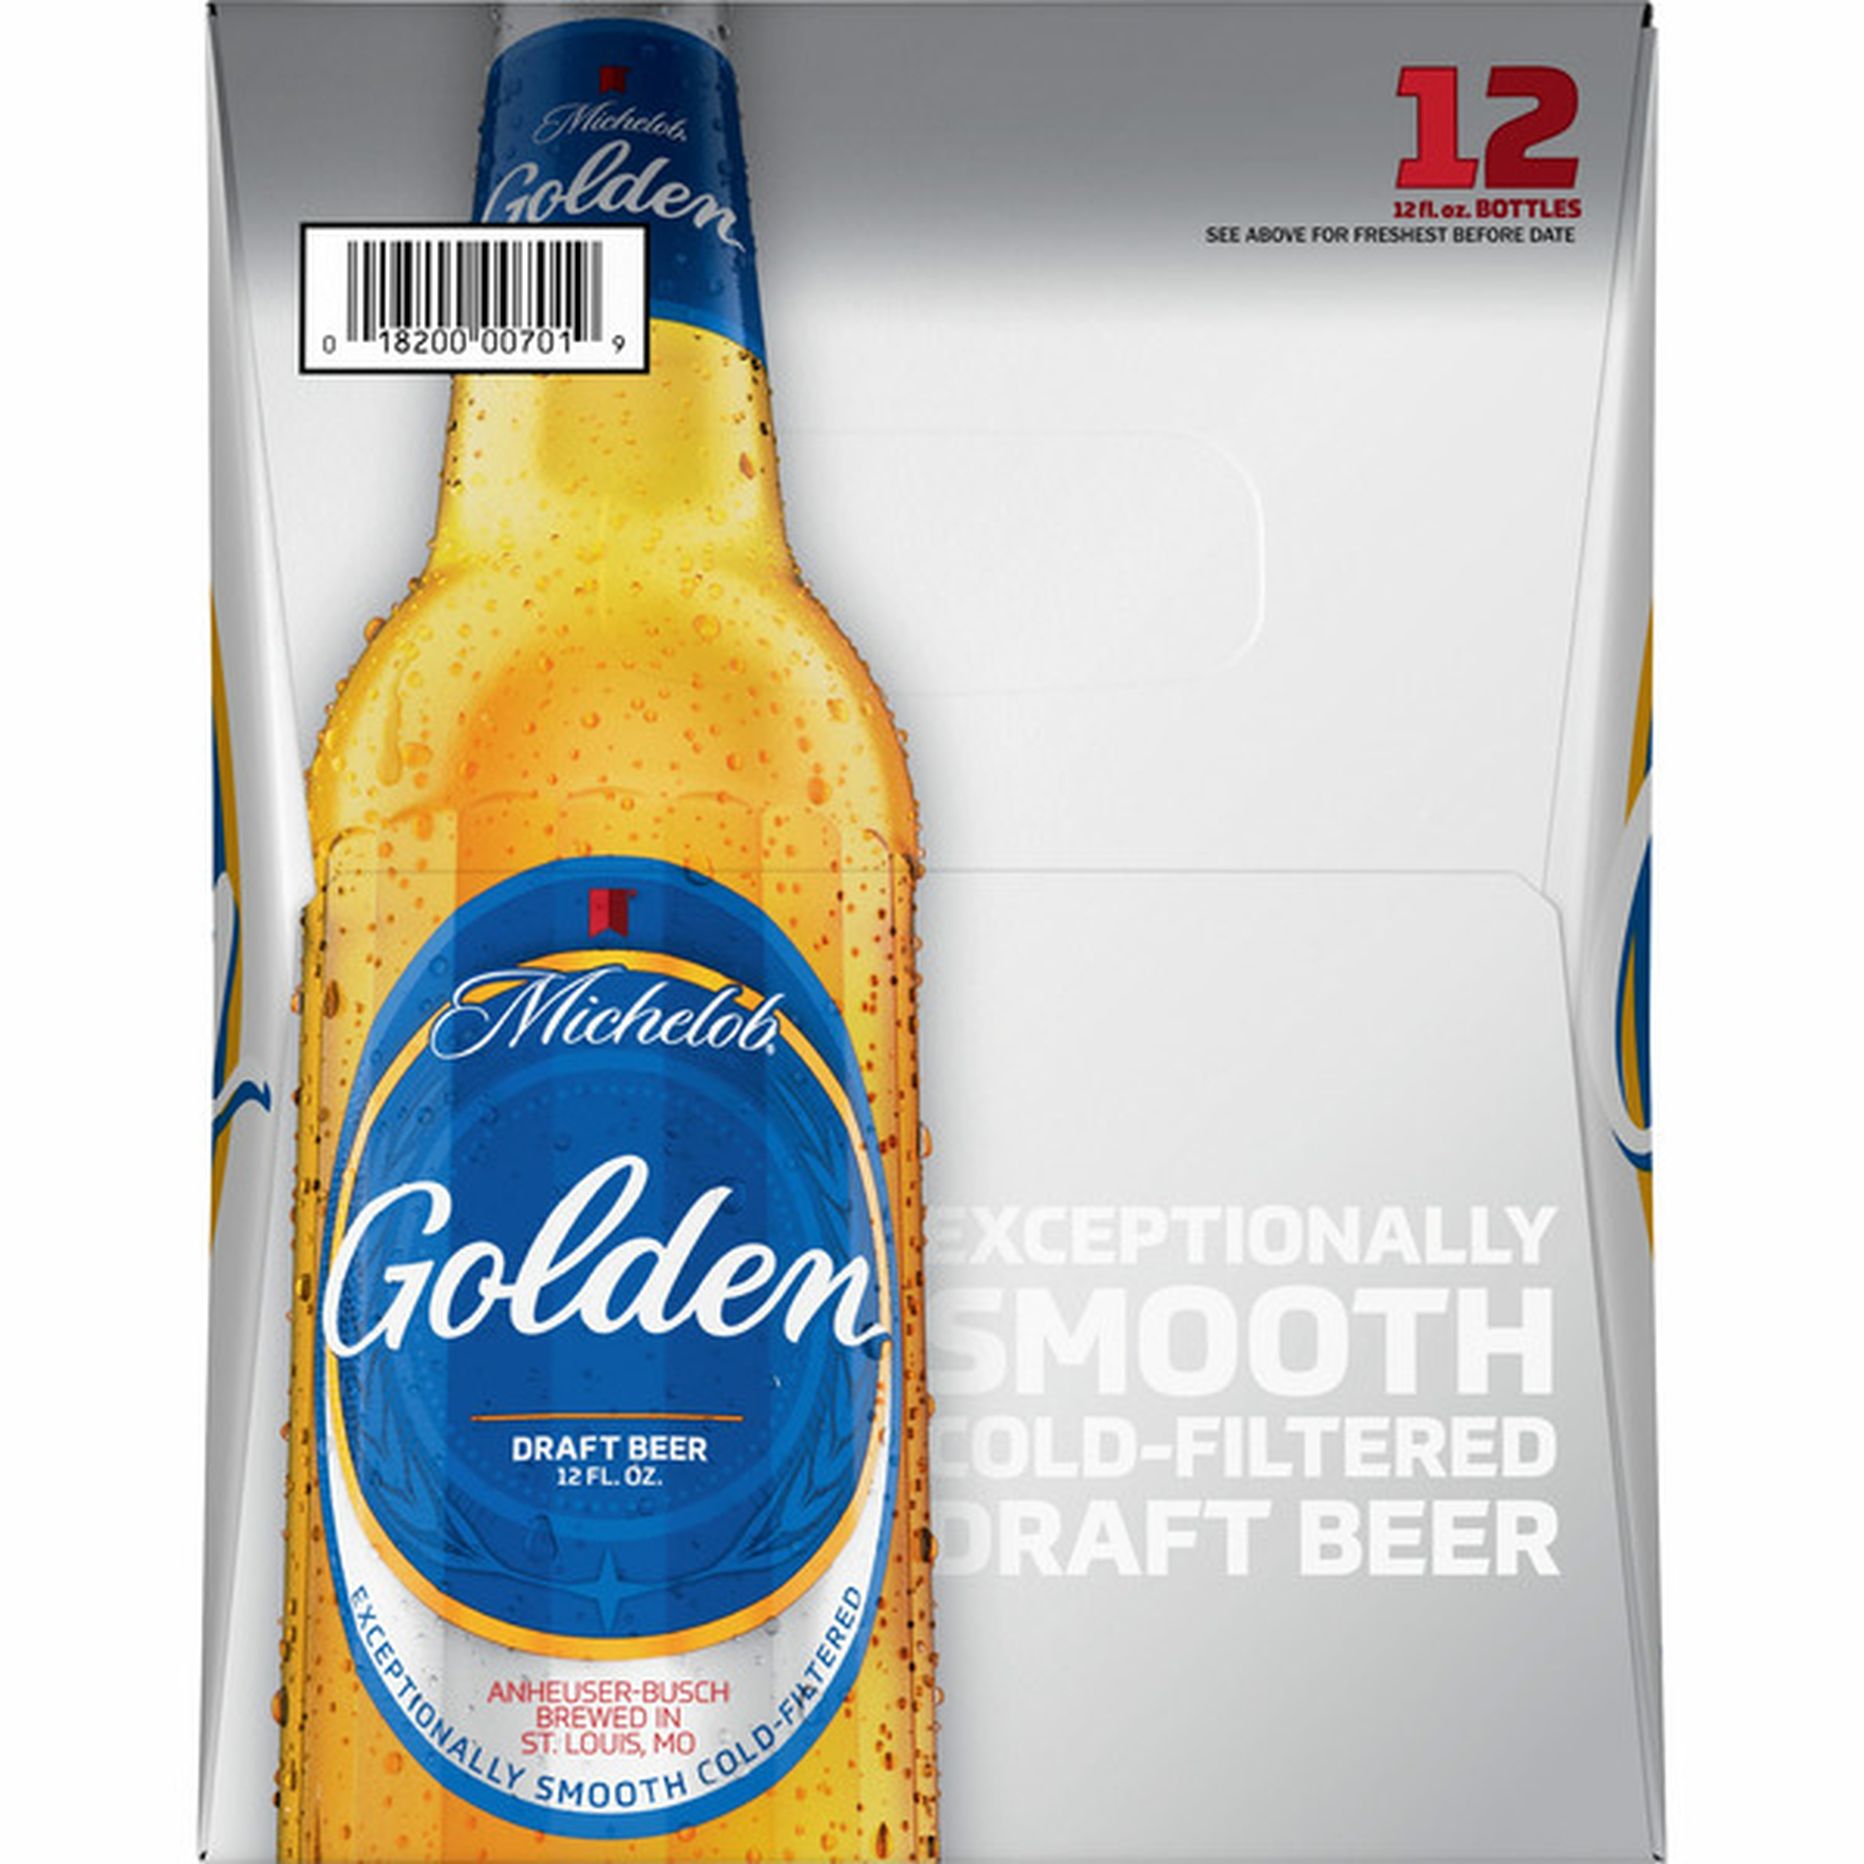 Michelob Golden Draft Beer Bottles 12 Fl Oz Delivery Or Pickup Near 